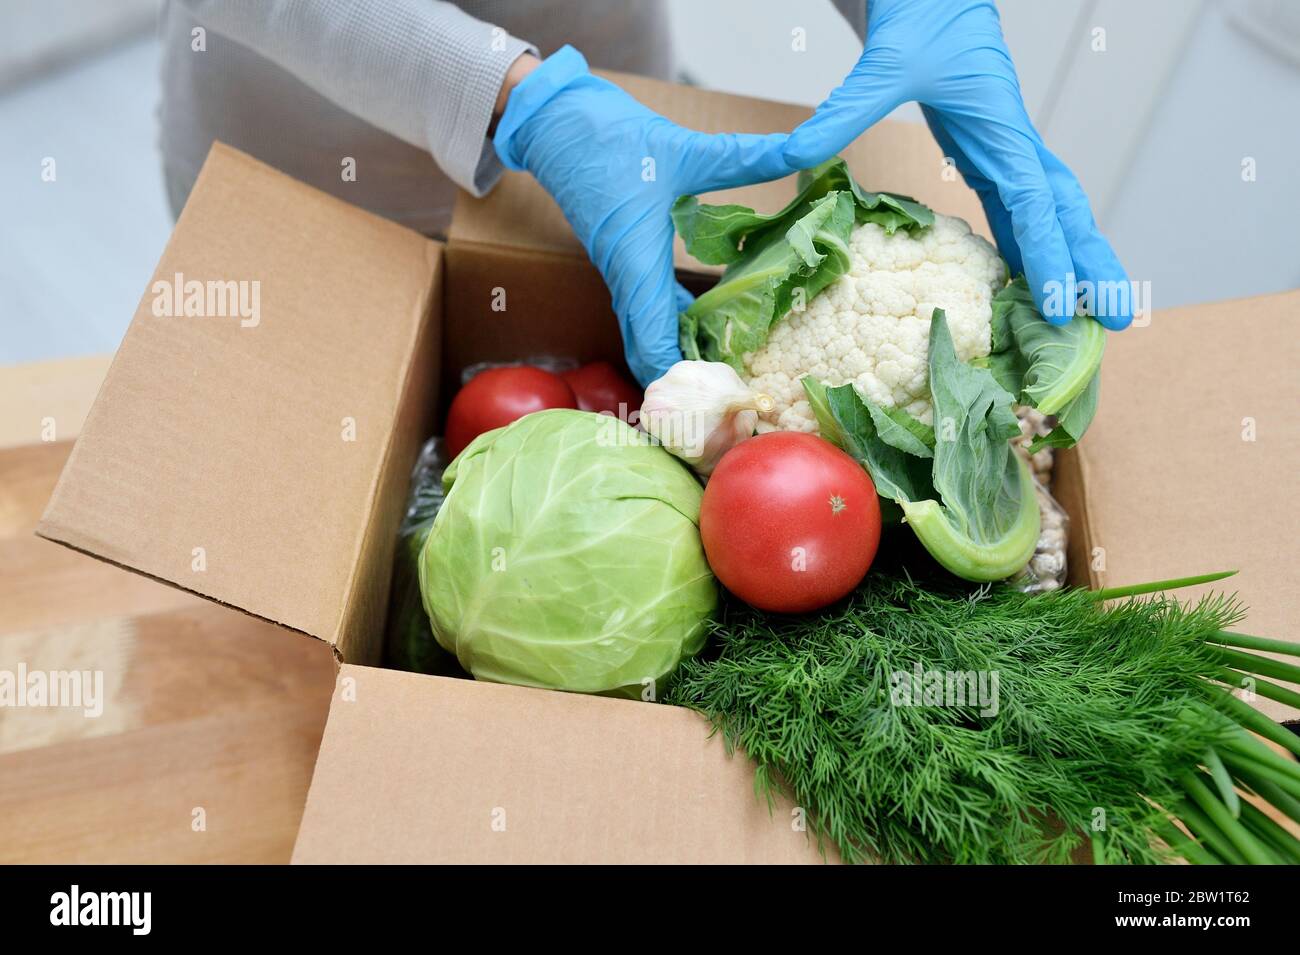 Volontaire en gants avec boîte de don de nourriture met des légumes pour aider les autres. Boîte de don avec des aliments Banque D'Images